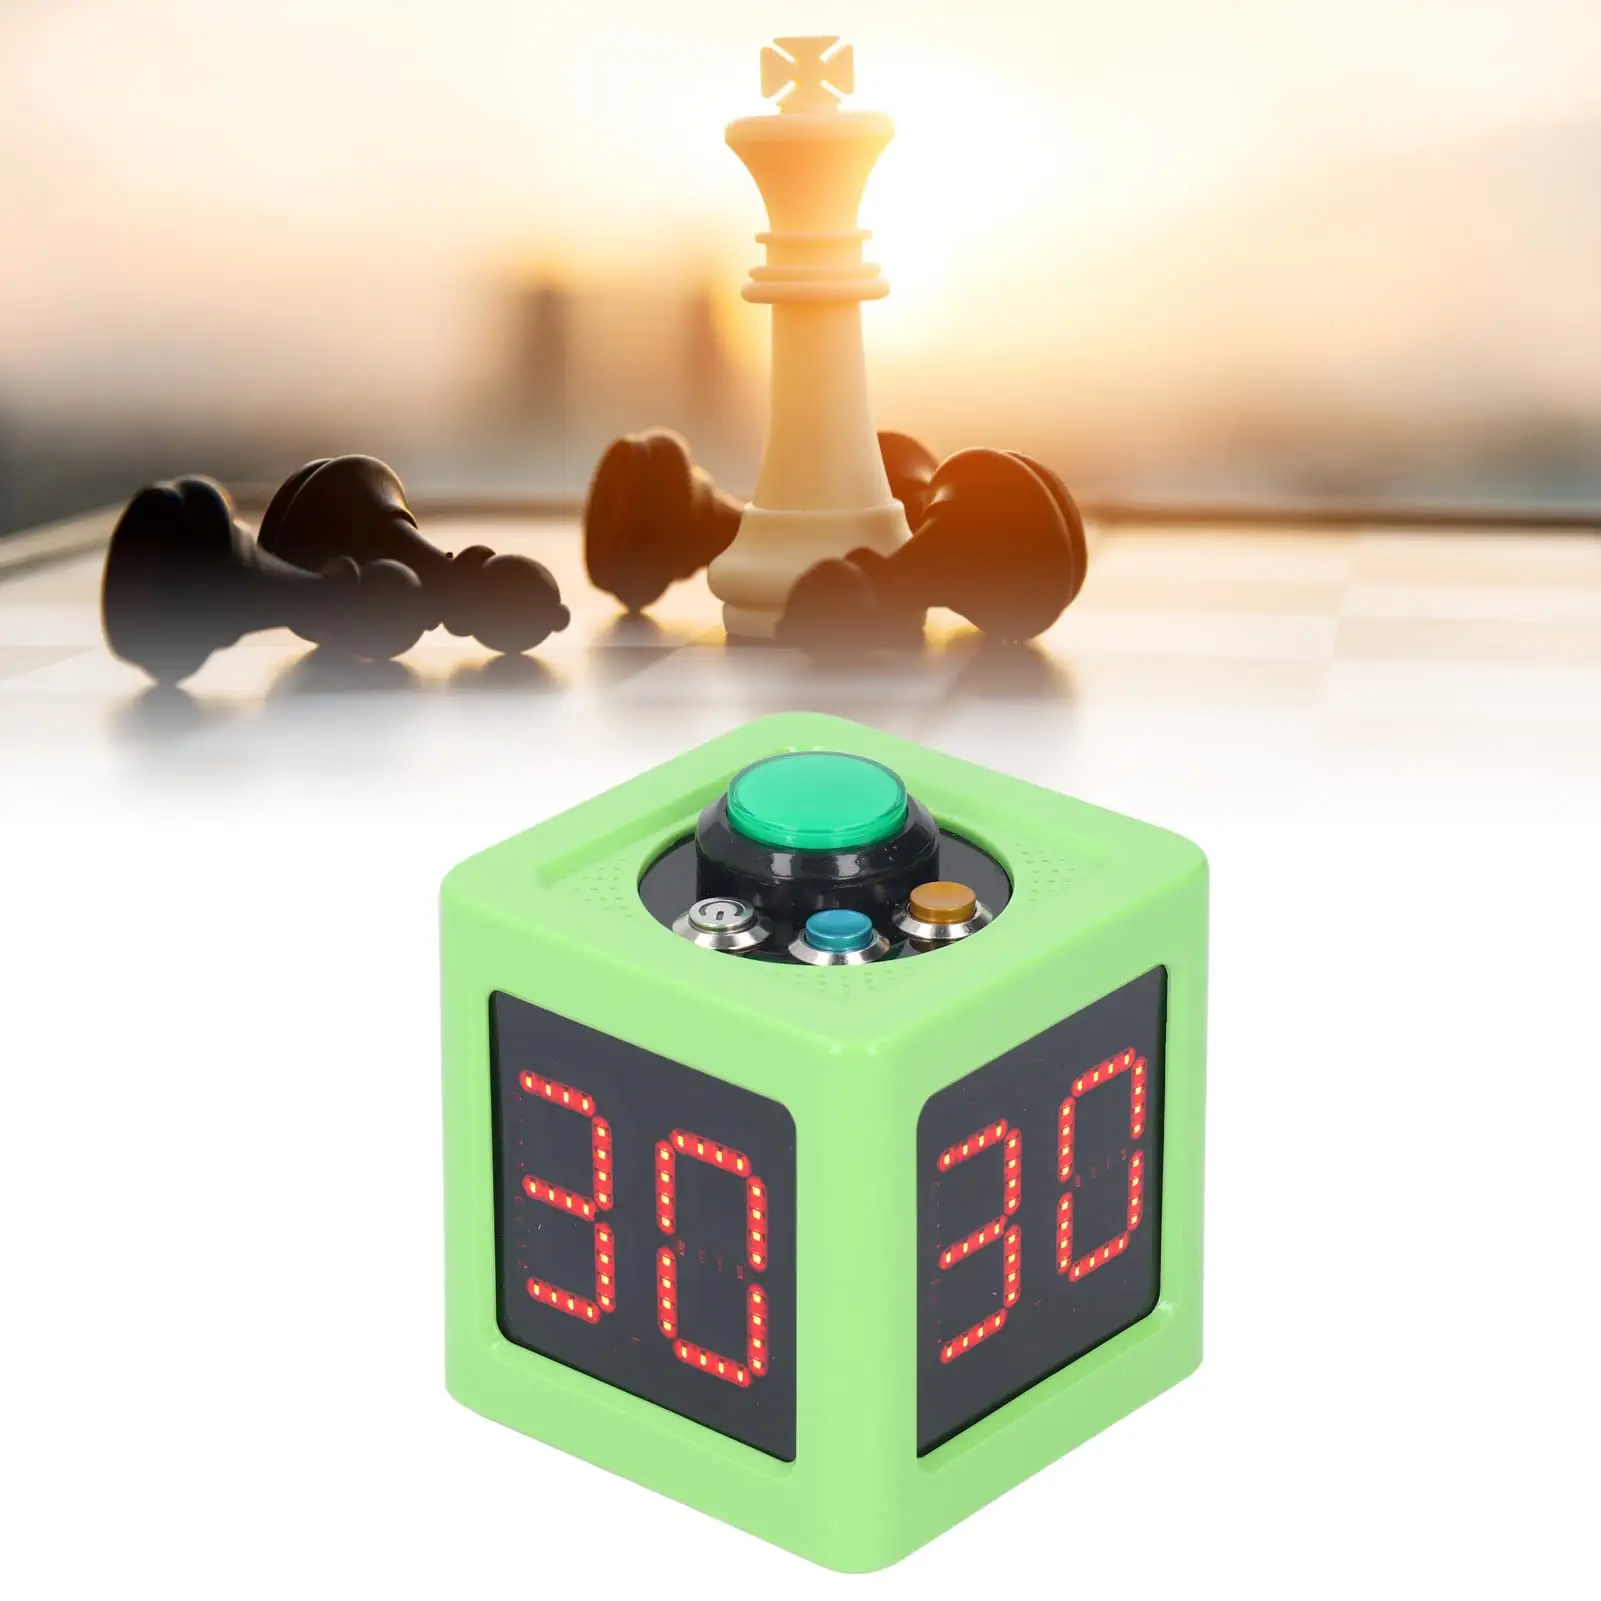 पेशेवर पोकर कैसीनो शतरंज टूर्नामेंट के लिए 0-99 सेकंड की उलटी गिनती के साथ YIZHI एलईडी डिजिटल पोकर शतरंज टाइमर शॉट घड़ी